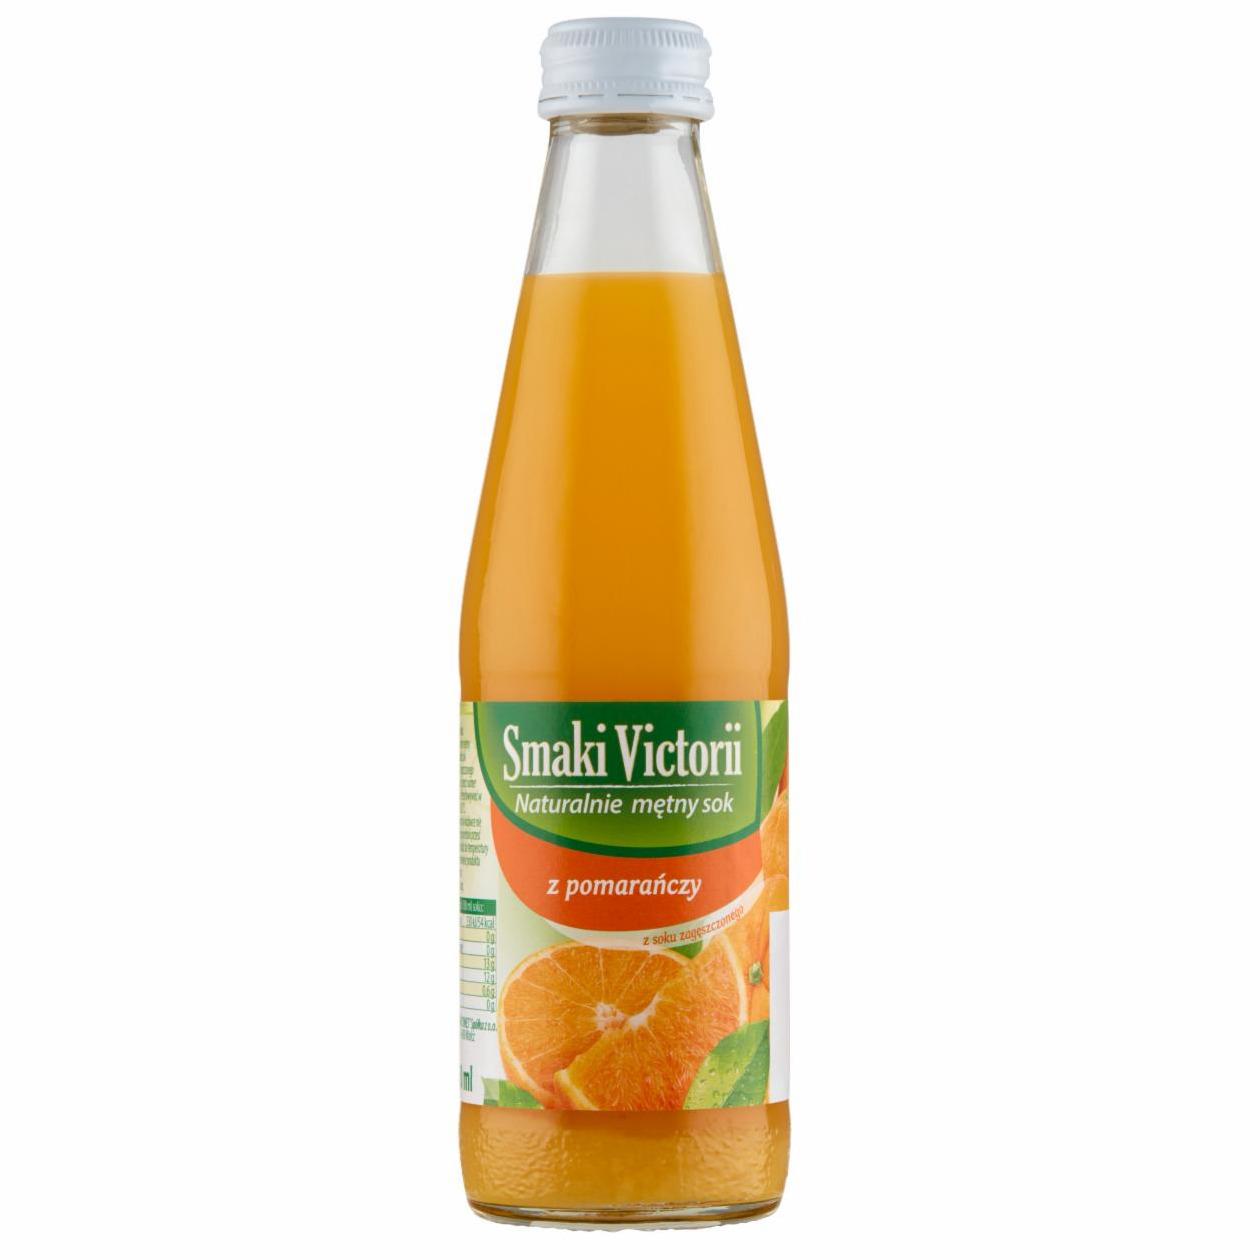 Zdjęcia - Smaki Victorii Naturalnie mętny sok z pomarańczy 250 ml